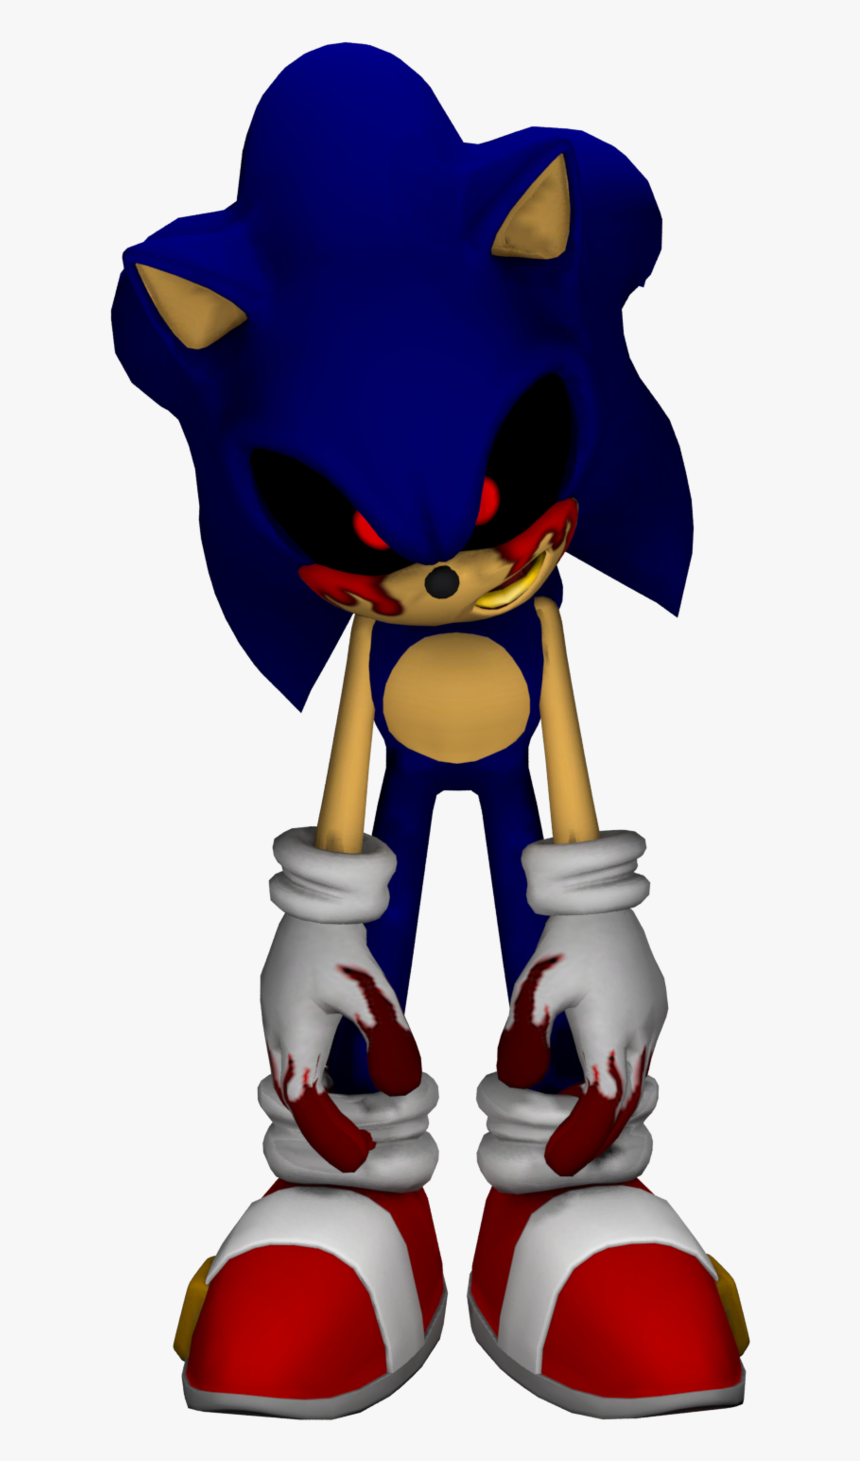 Resultado De Imagen Para Sonicexe Desenhos Do Sonic Imagens De Images